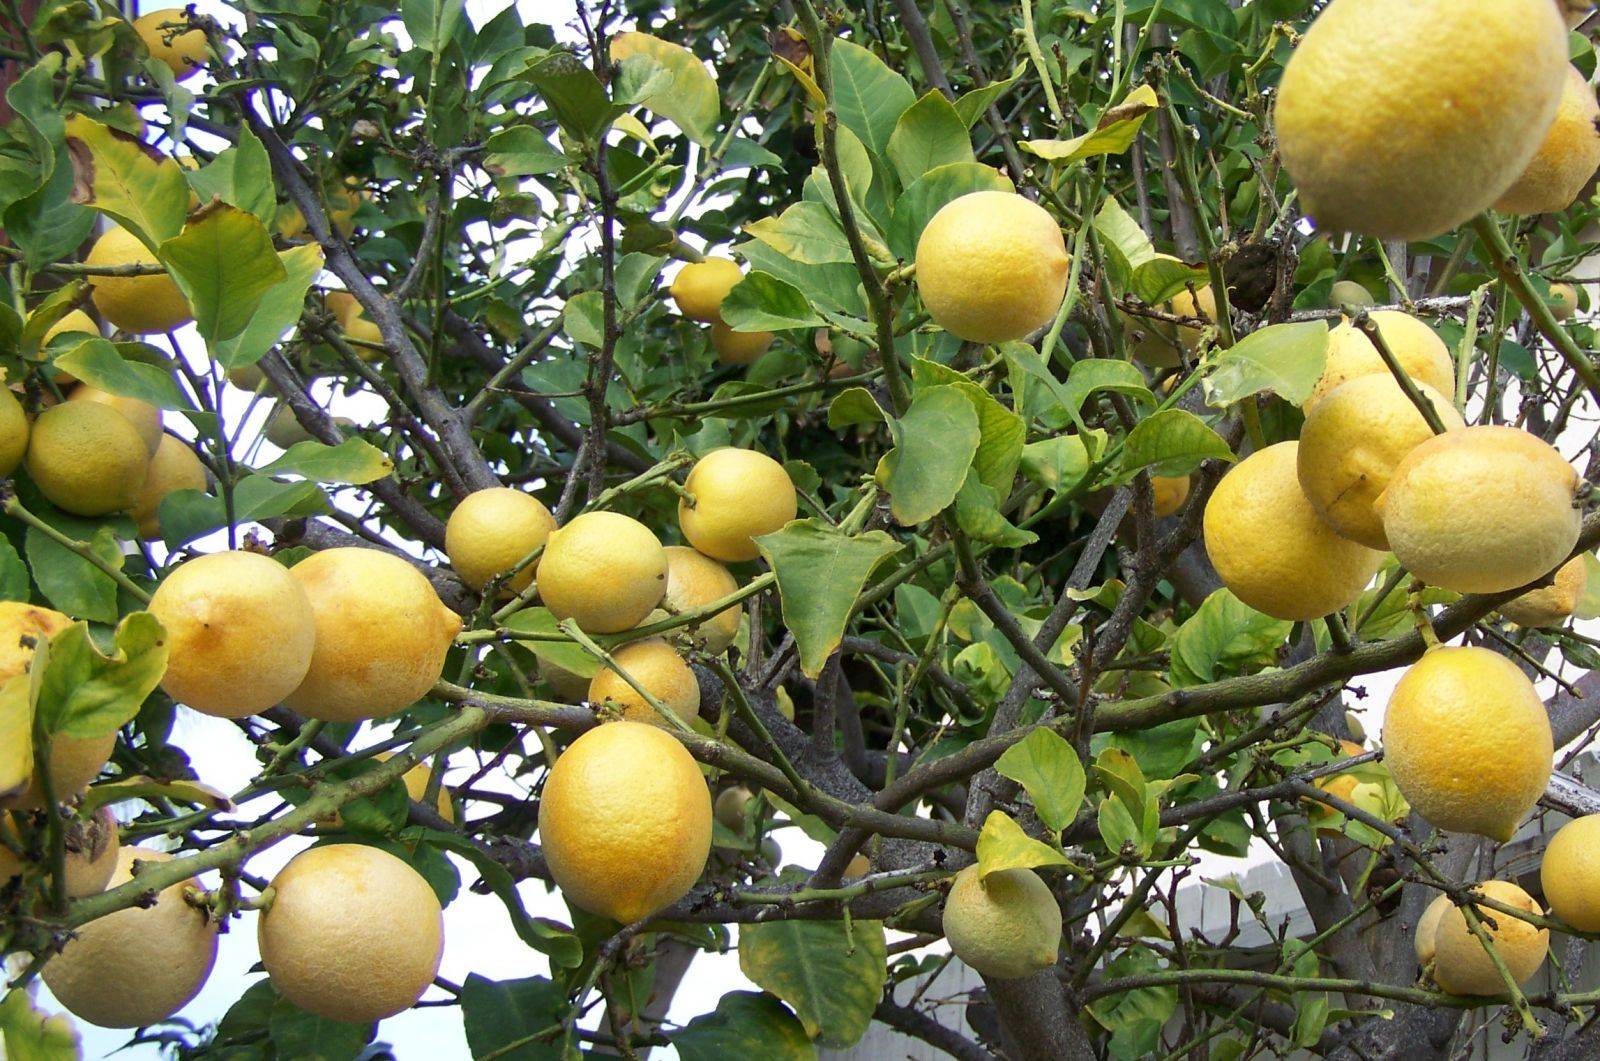 Лимон мейера: описание сорта, выращивание и уход в домашних условиях, обрезка